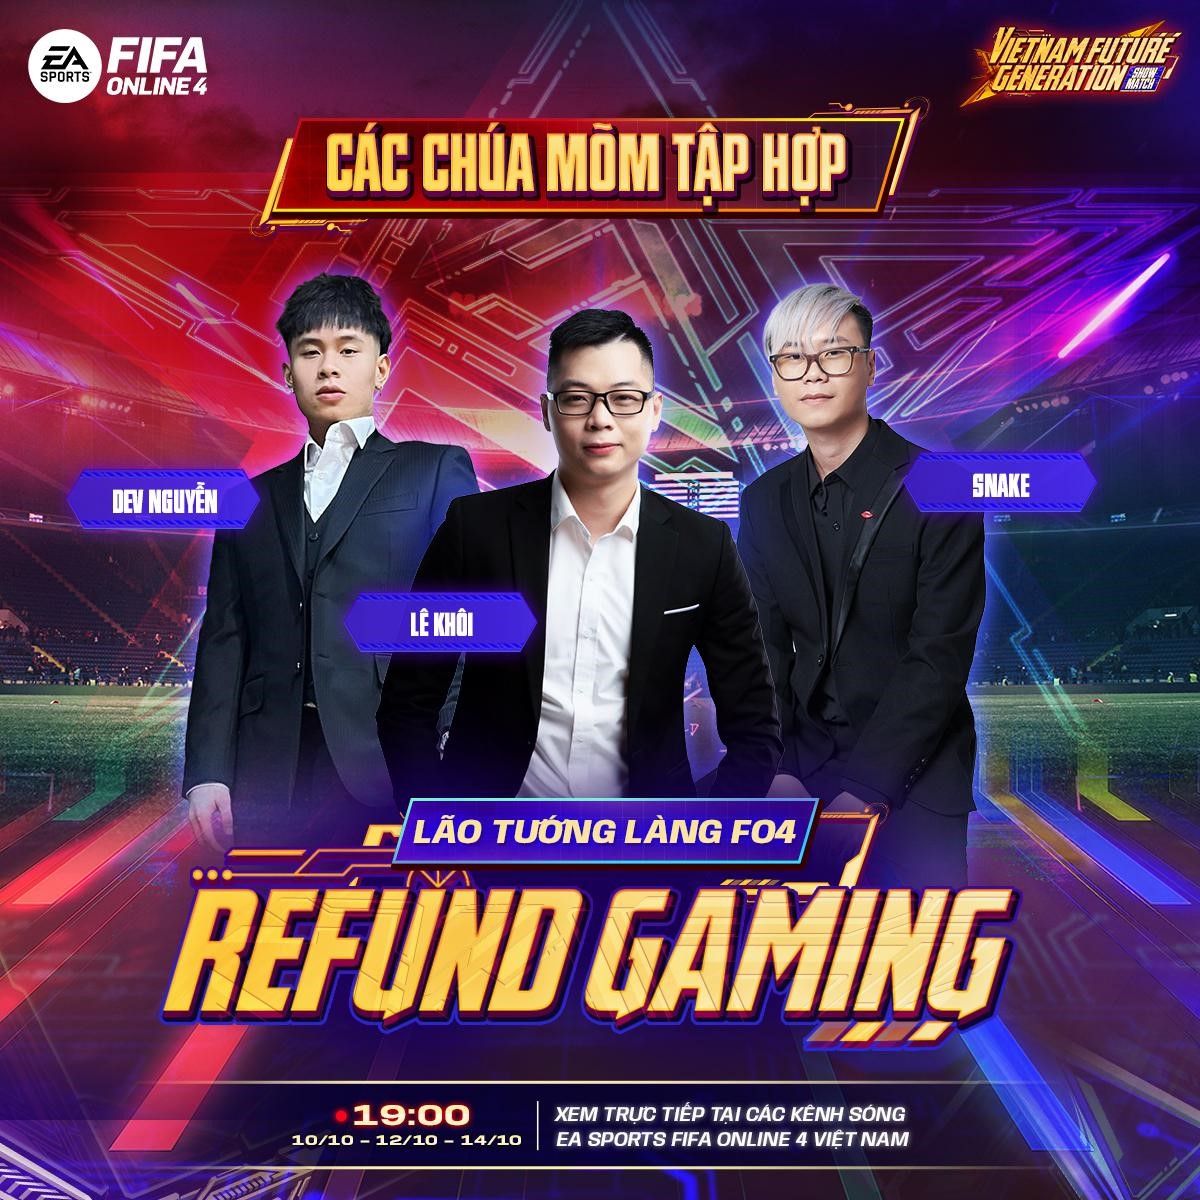 Refund Gaming tranh tài cùng U23 Việt Nam tại FIFA Online 4 VFG Showmatch 2022 4-1665124523953627907934-1665128185869-16651281859411679729665